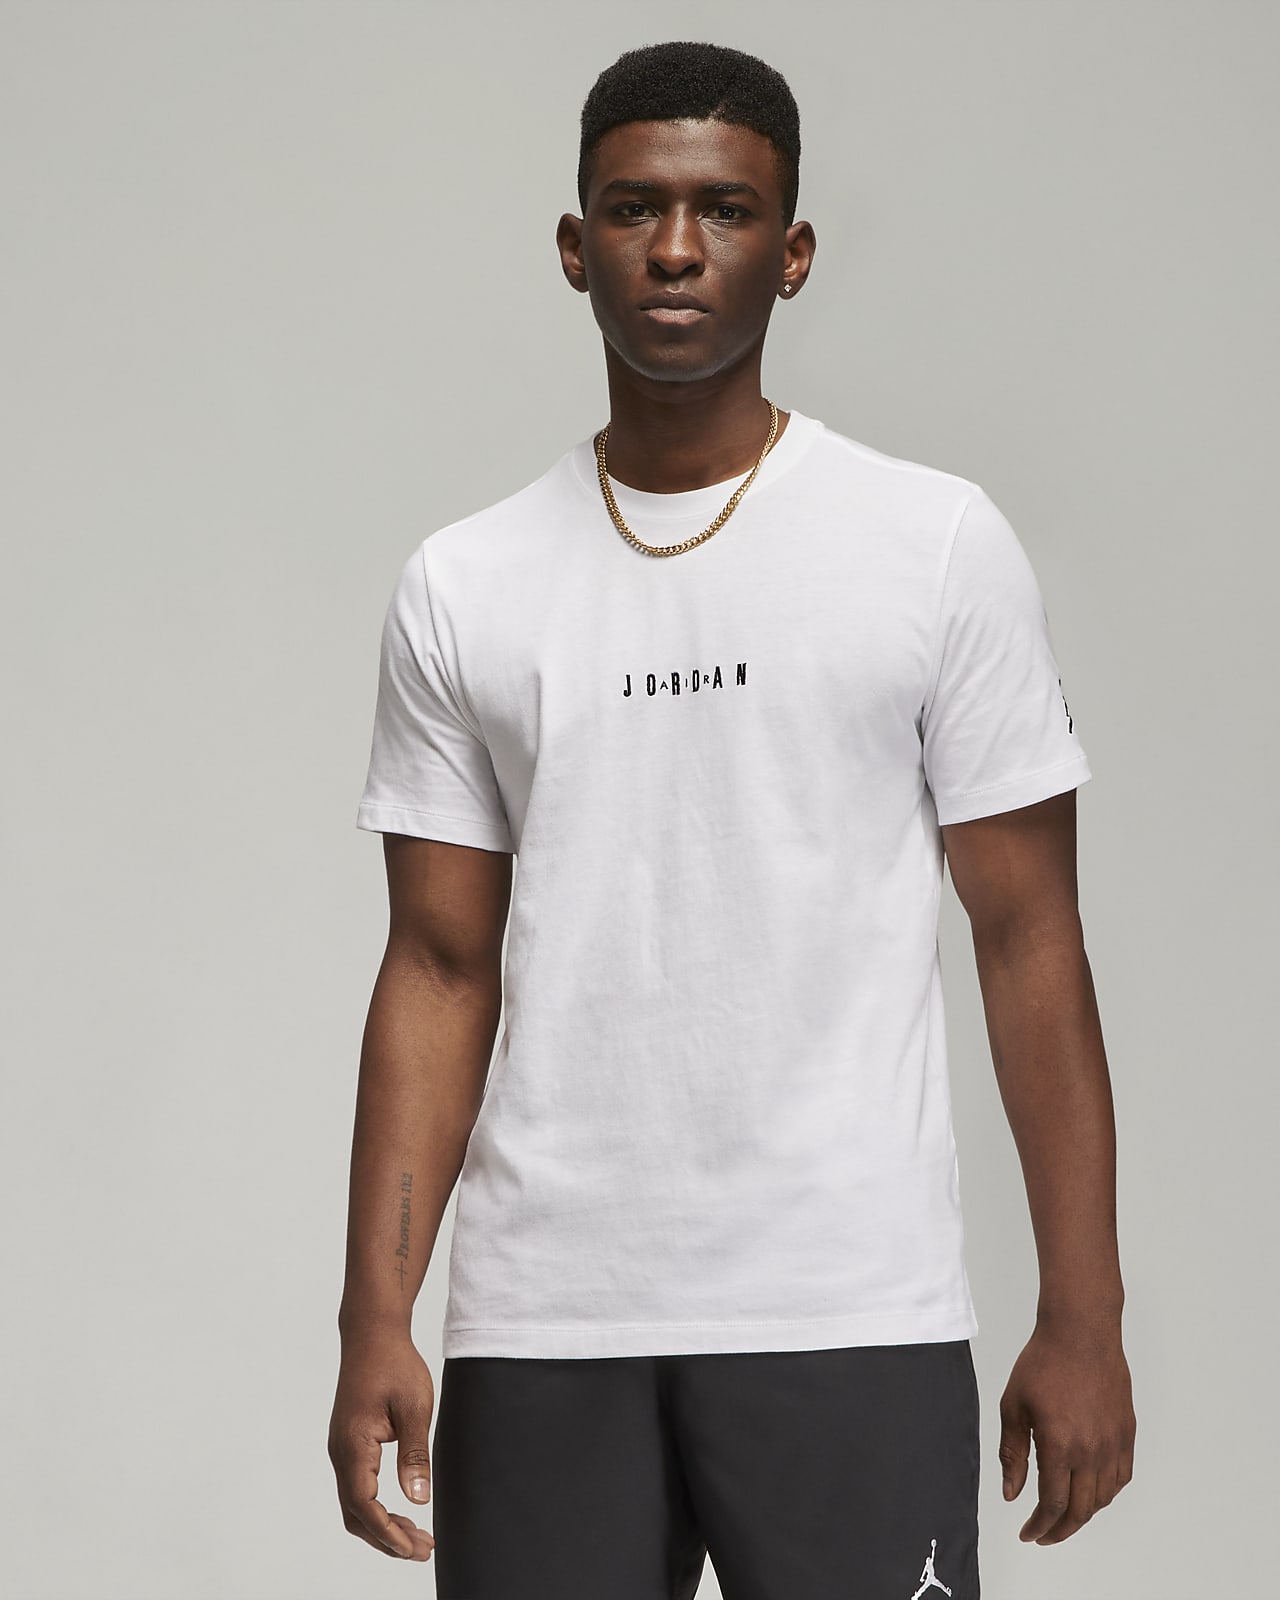 Jordan Air Herren-T-Shirt